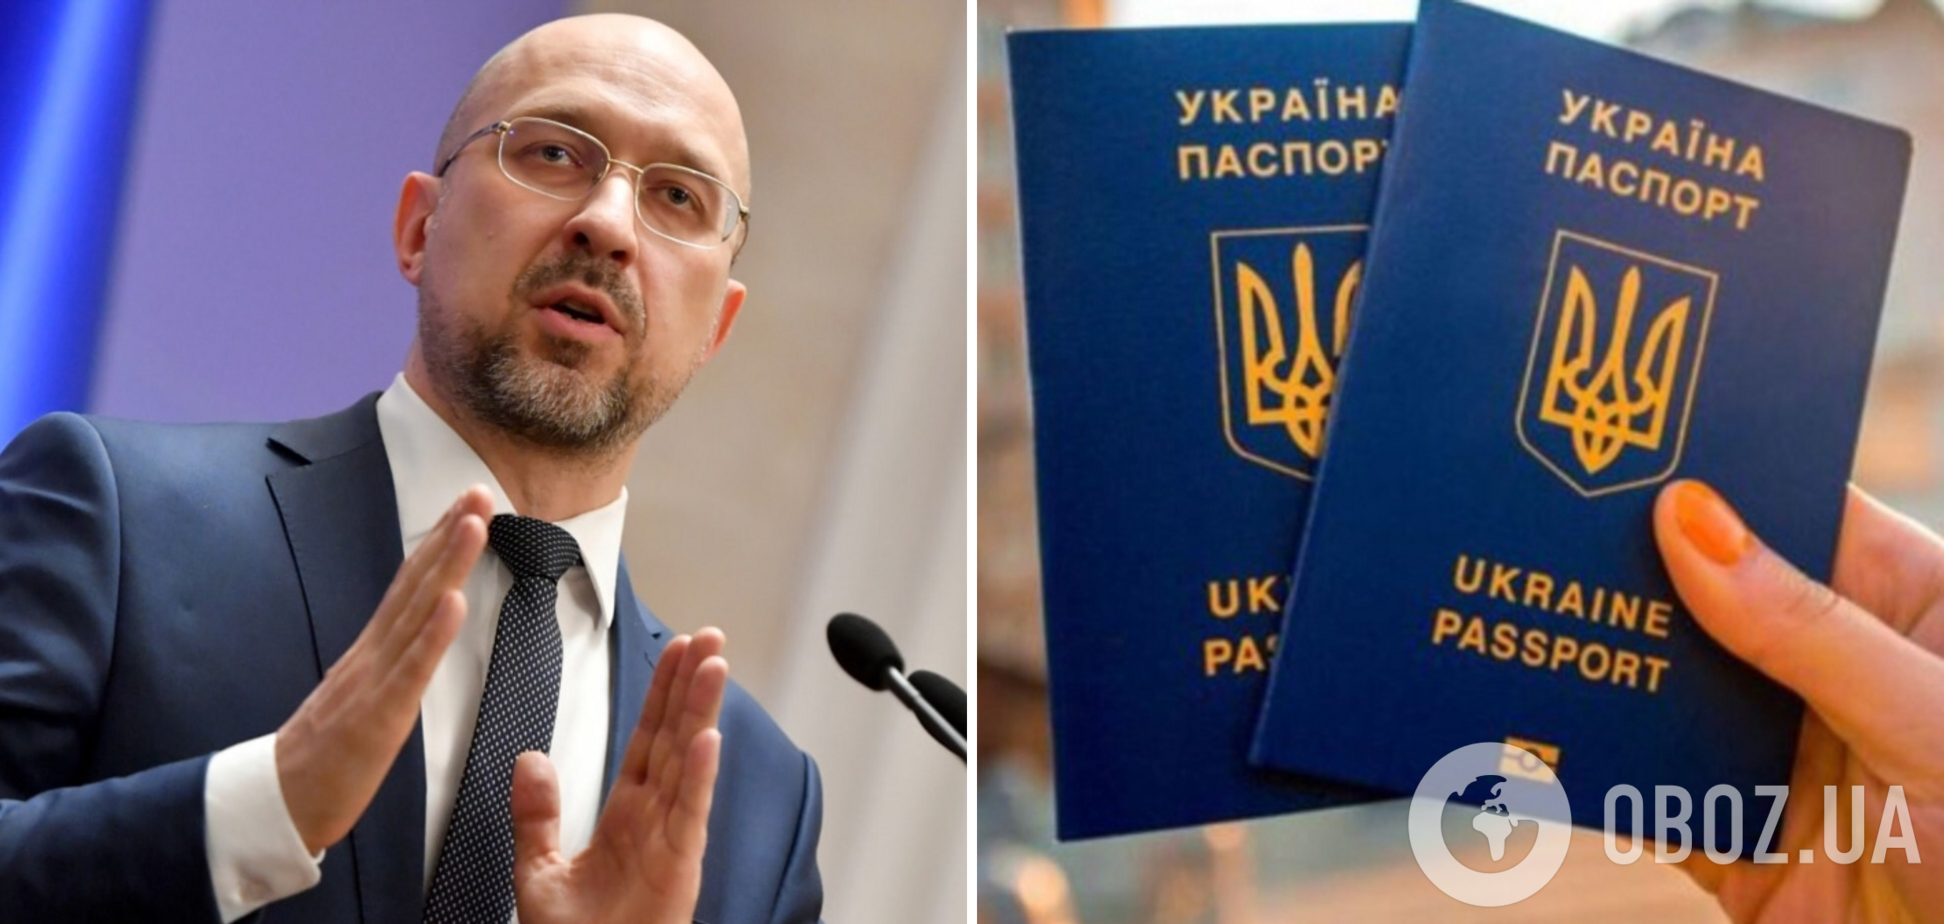 Кабмин готовит законопроекты о введении комплексного экзамена для желающих получить гражданство Украины